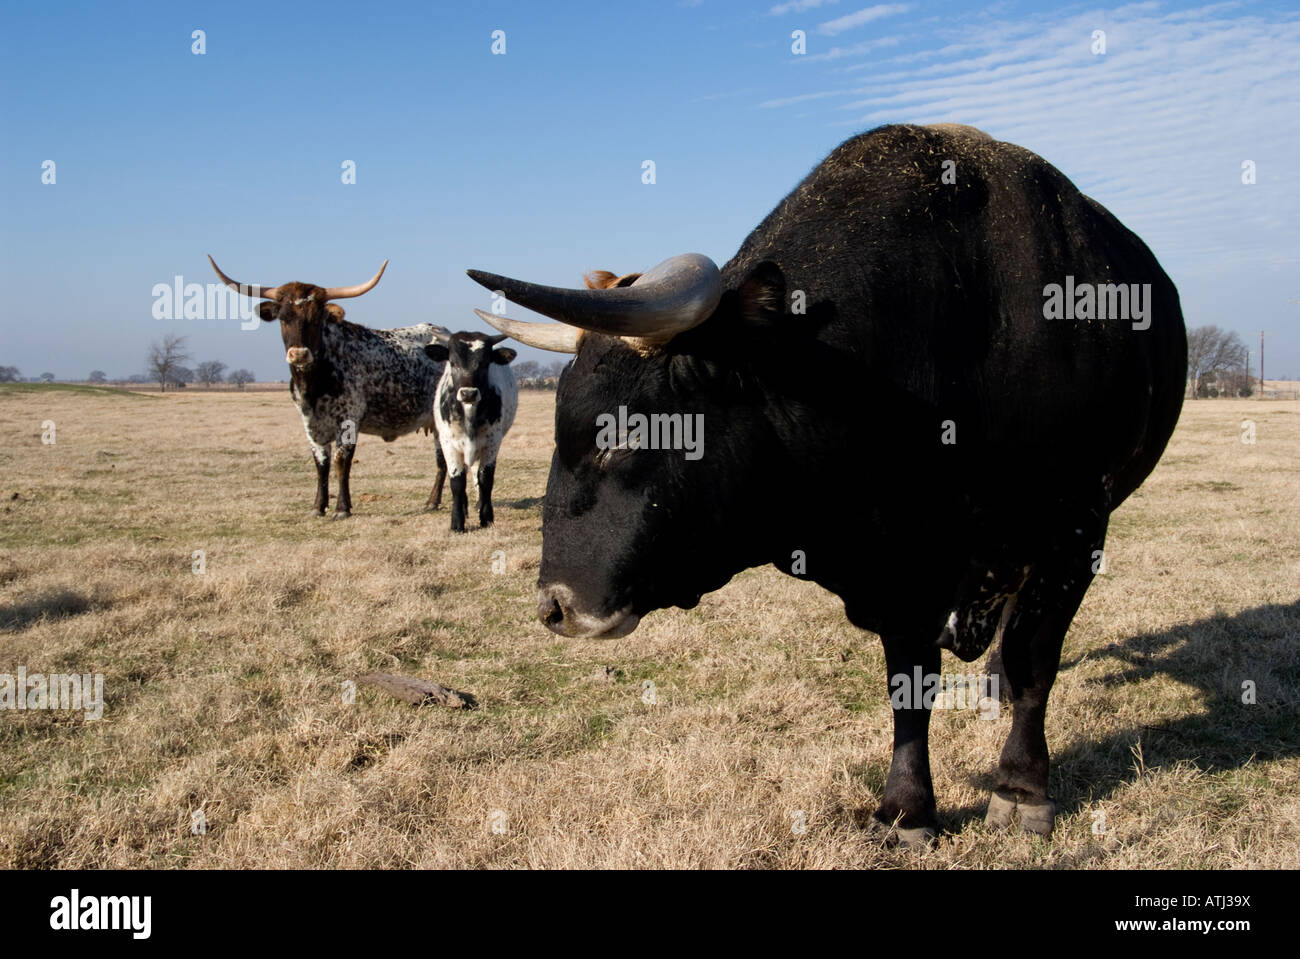 Longhorn cattle in a field in Texas Stock Photo